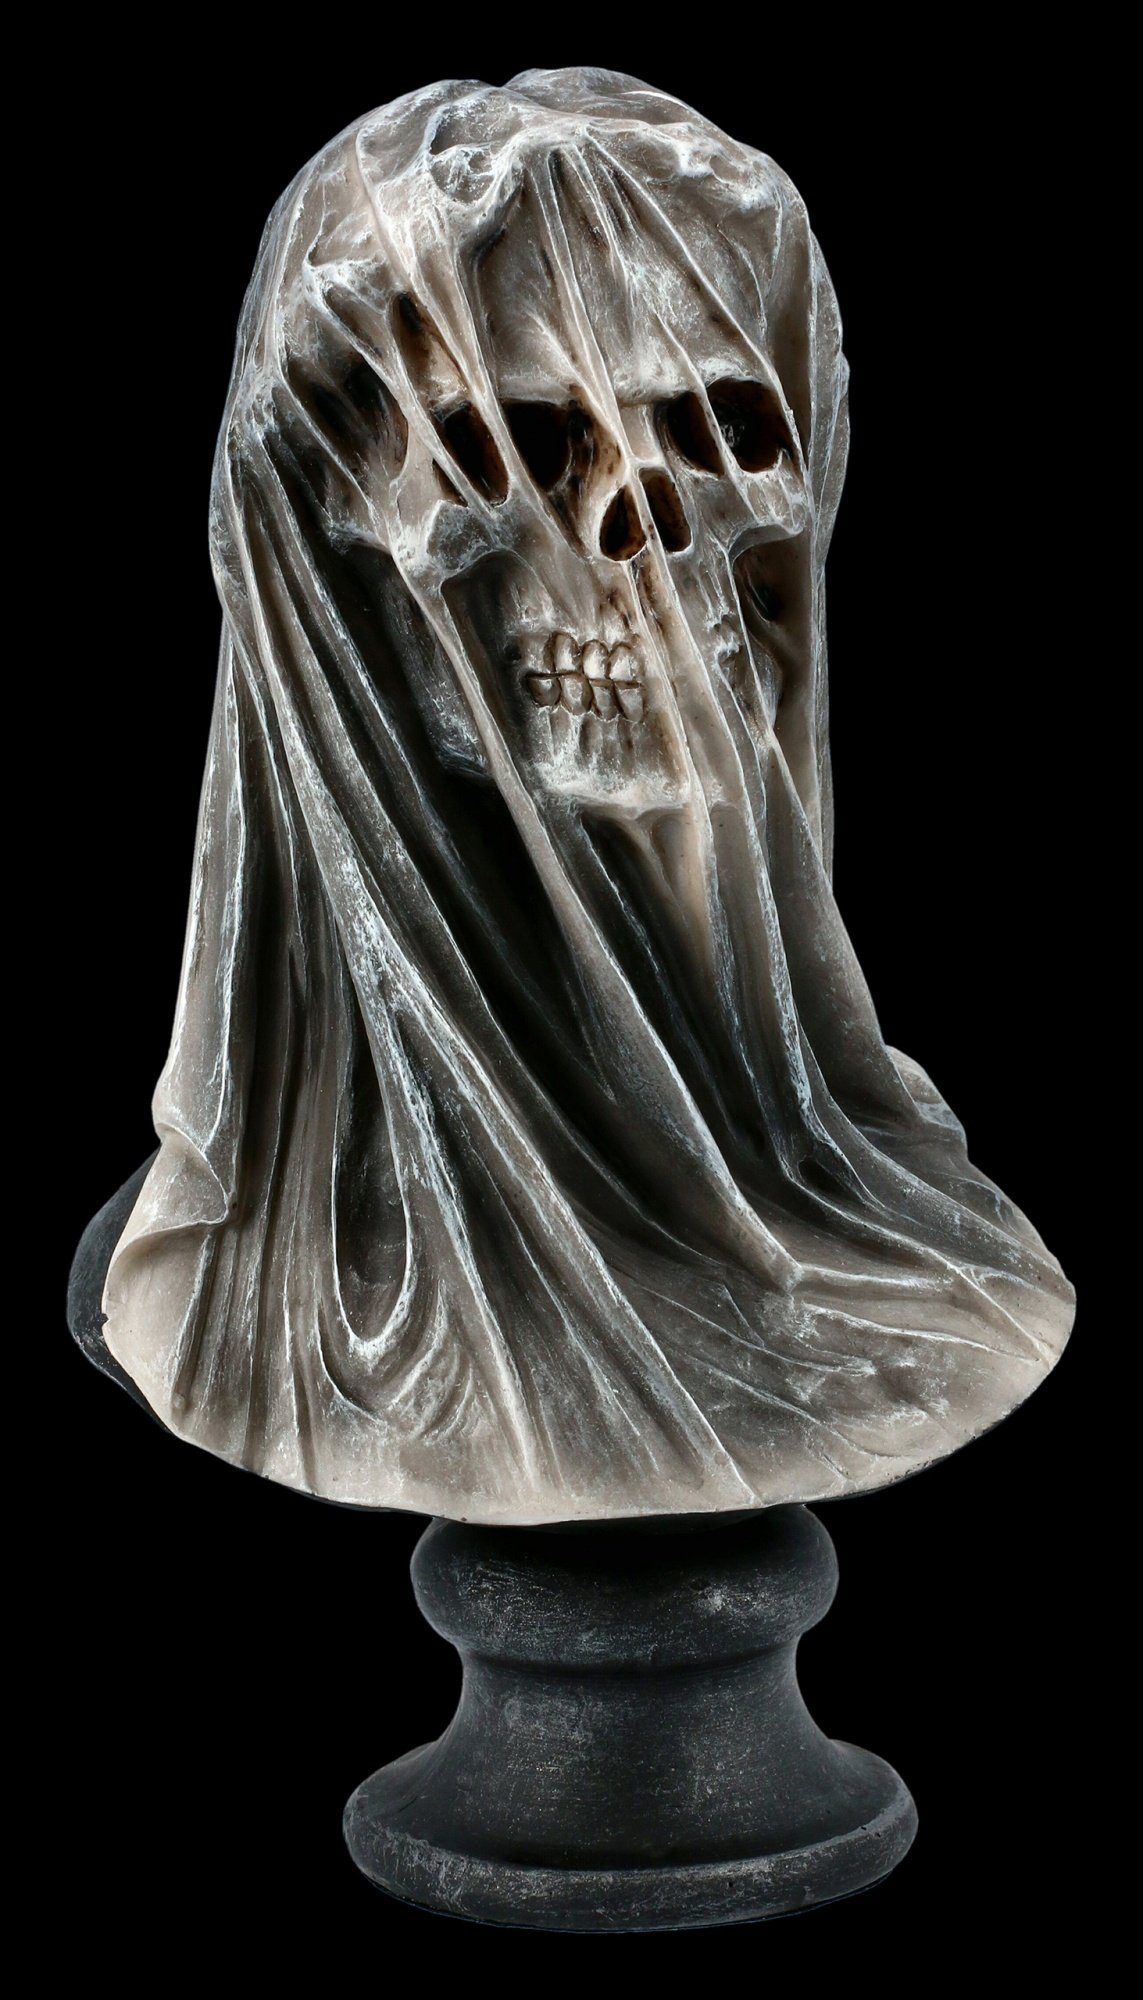 Totenkopf Figur mit Hörnern - Death Embers